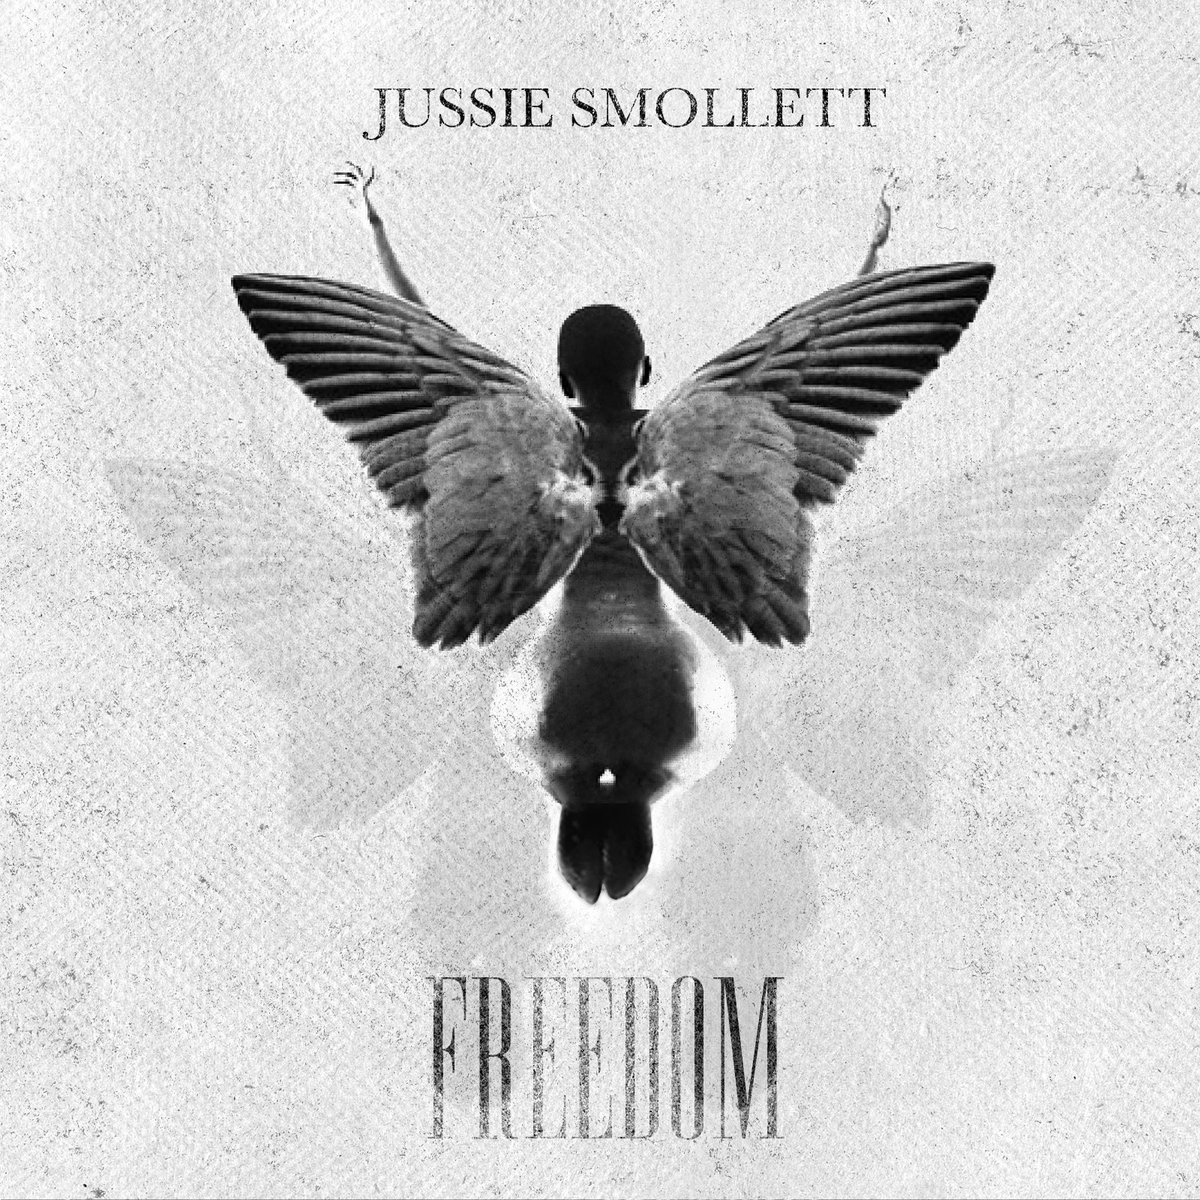 New Music: Jussie Smollett - Freedom